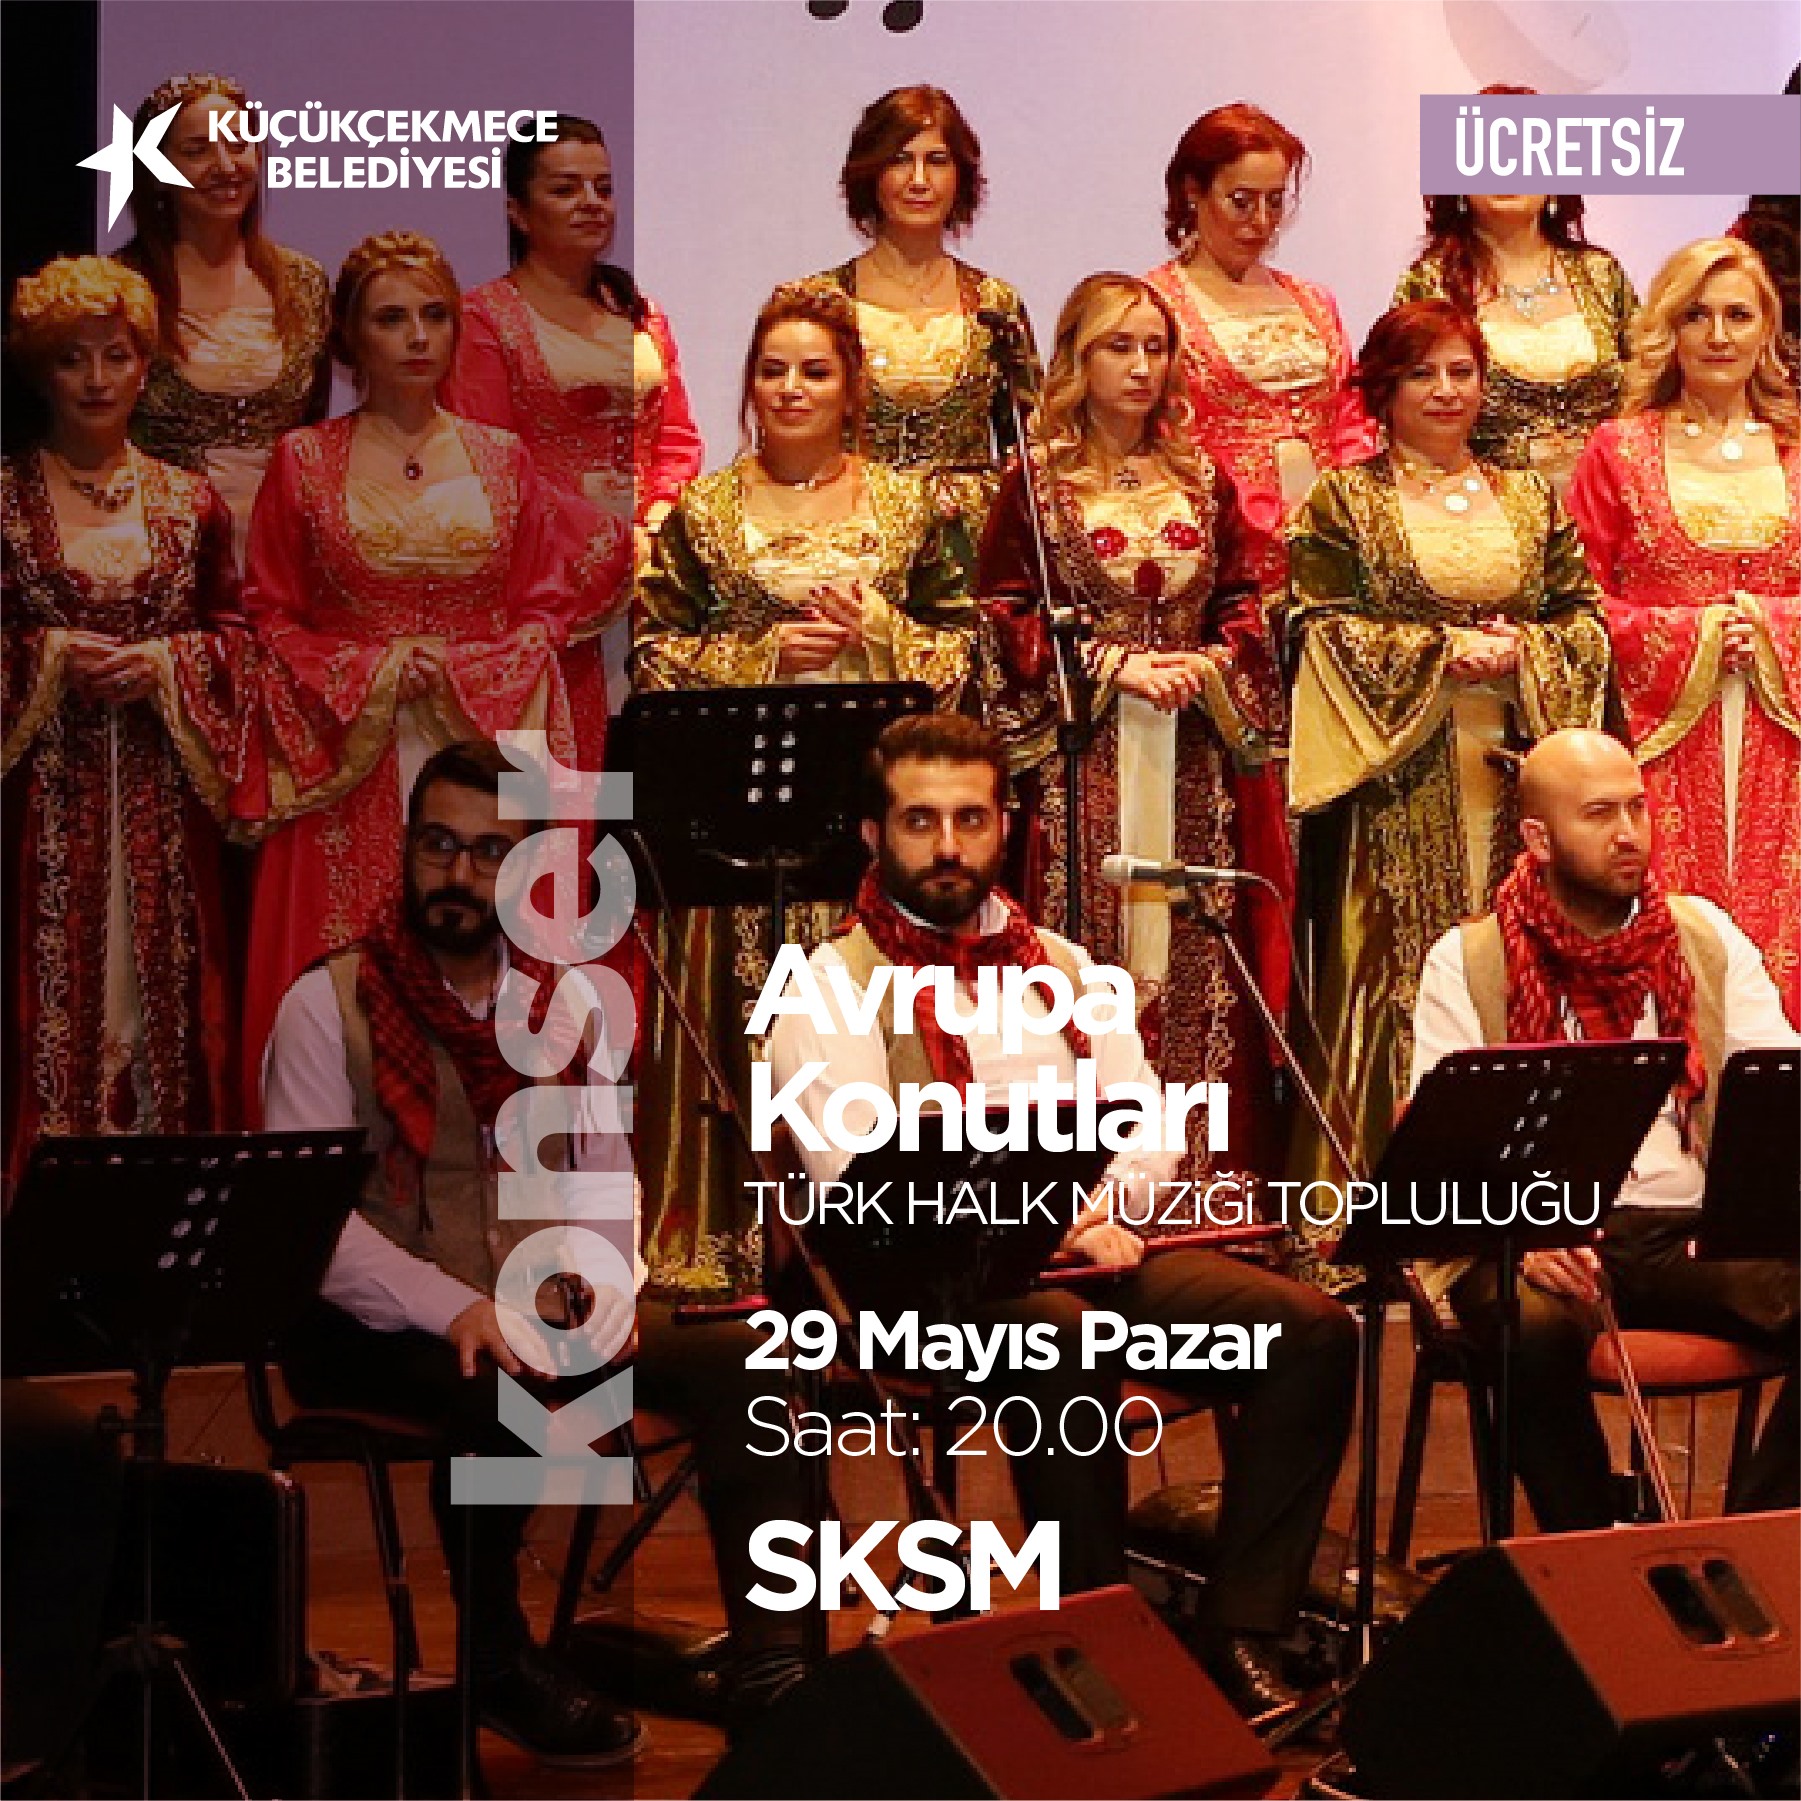 Avrupa Konutları Türk Halk Müziği Topluluğu (Konser)